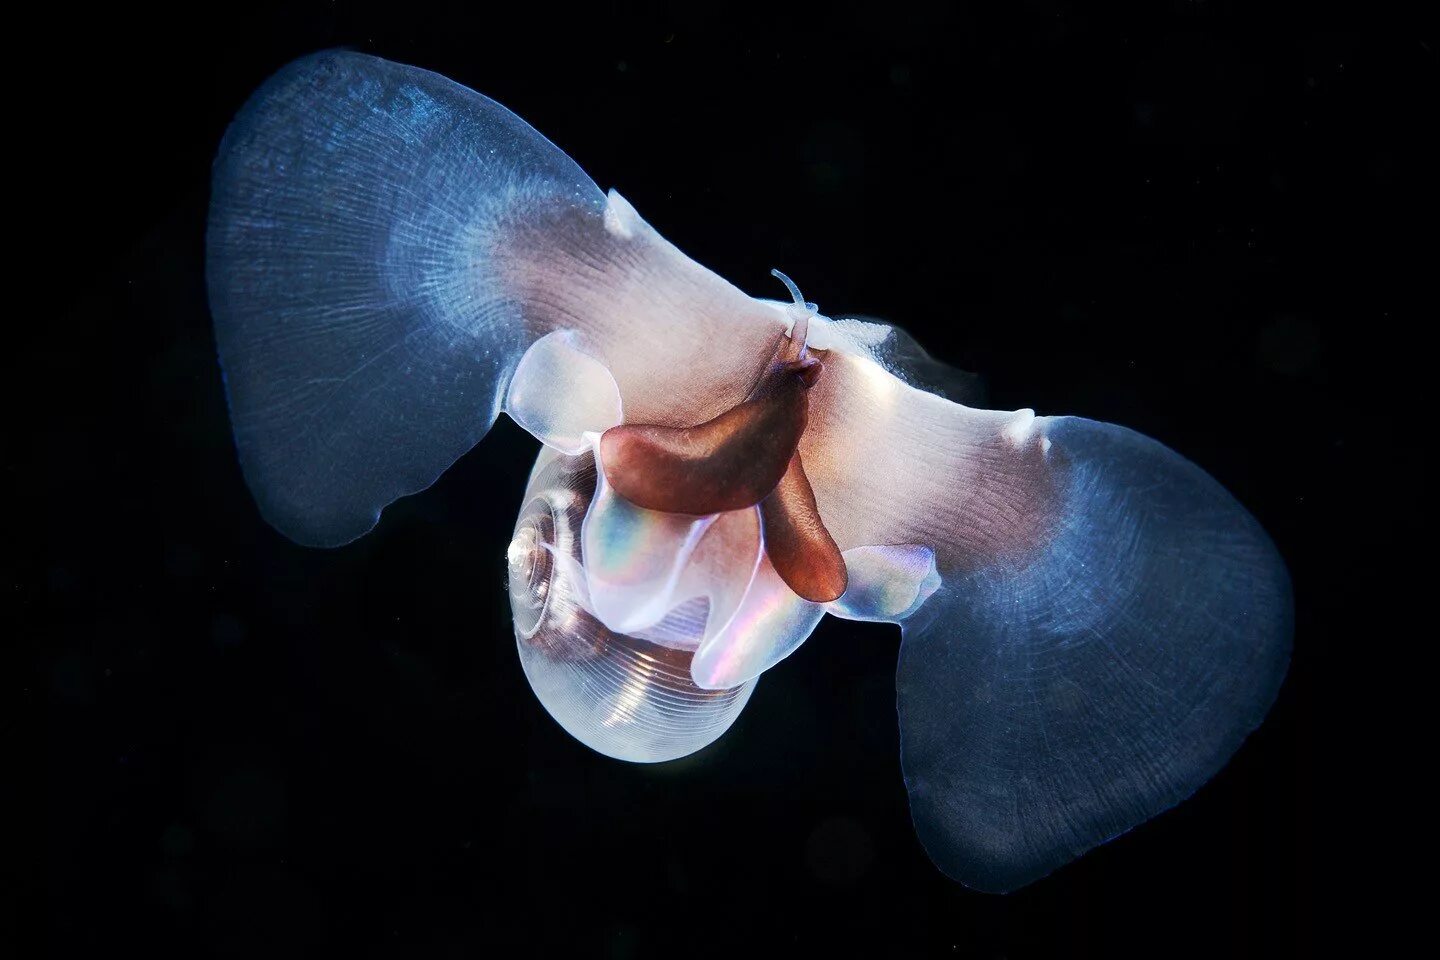 Морской ангел крылоногий моллюск. Крылоногий моллюск, лимацина (limacina helicina). Моллюск морской черт лимацин. Клион морской ангел.